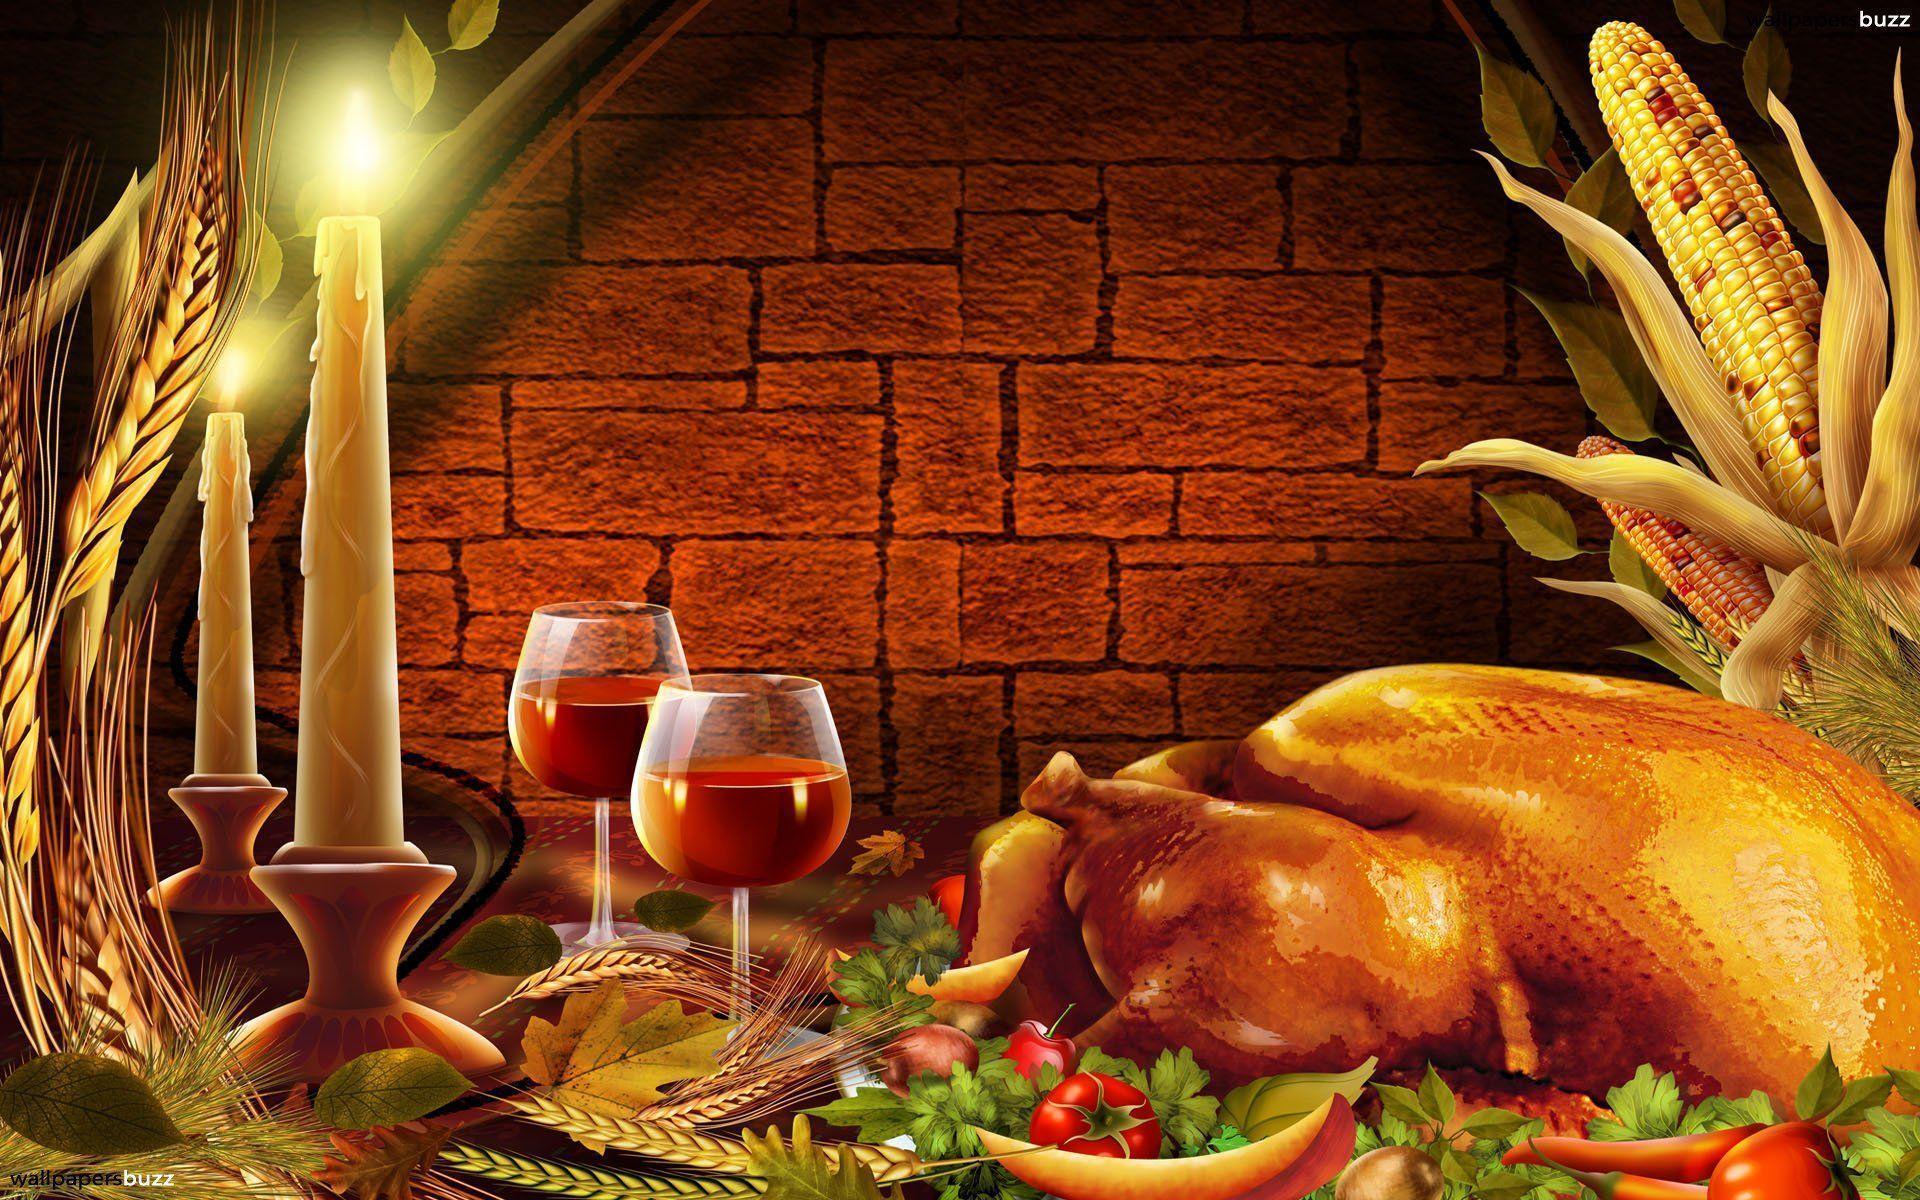 Wallpaper For > Turkey Thanksgiving Wallpaper